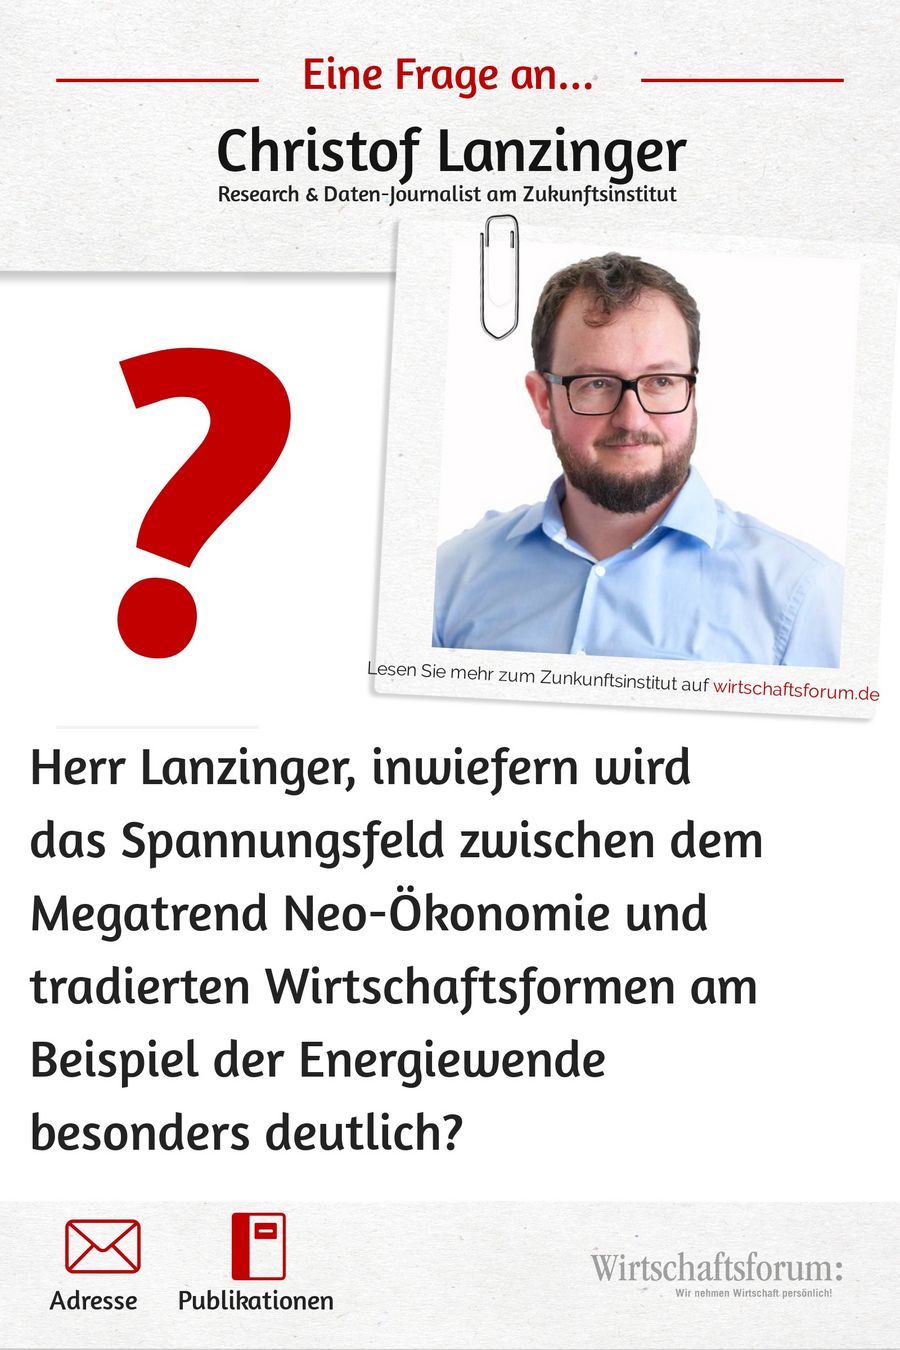 Eine Frage an Christof Lanzinger